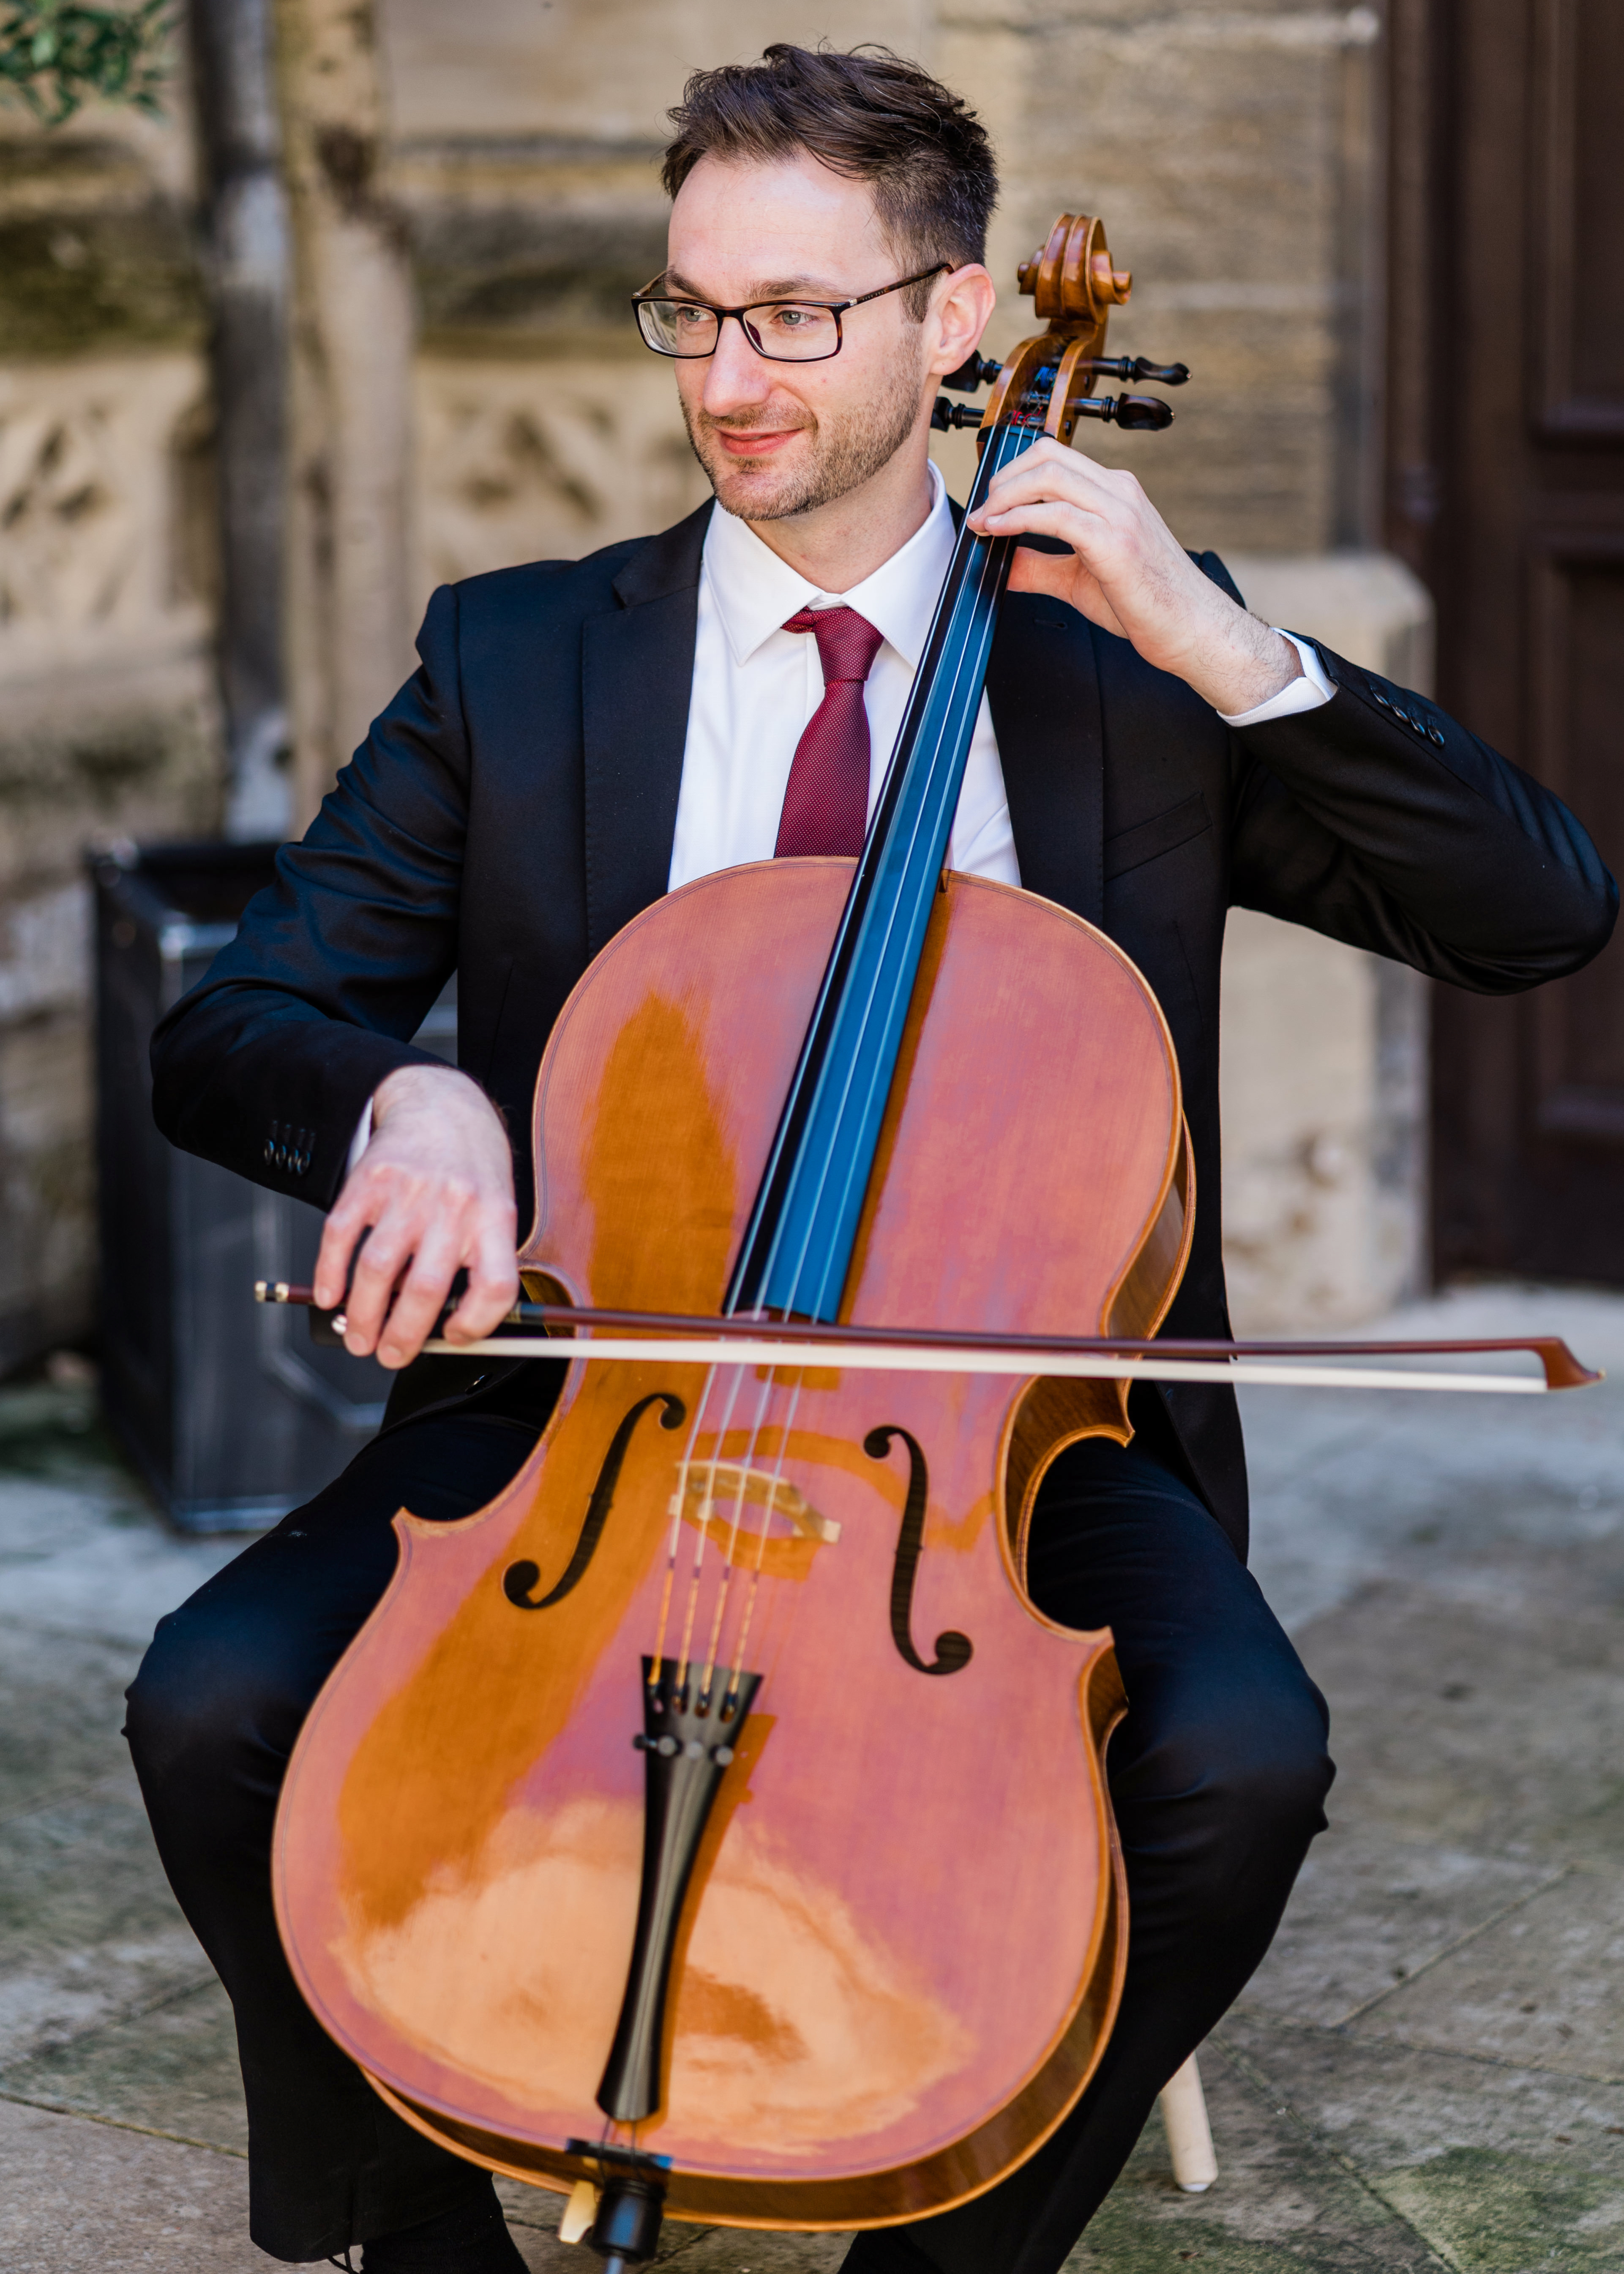 Image of Chris Slatter cello